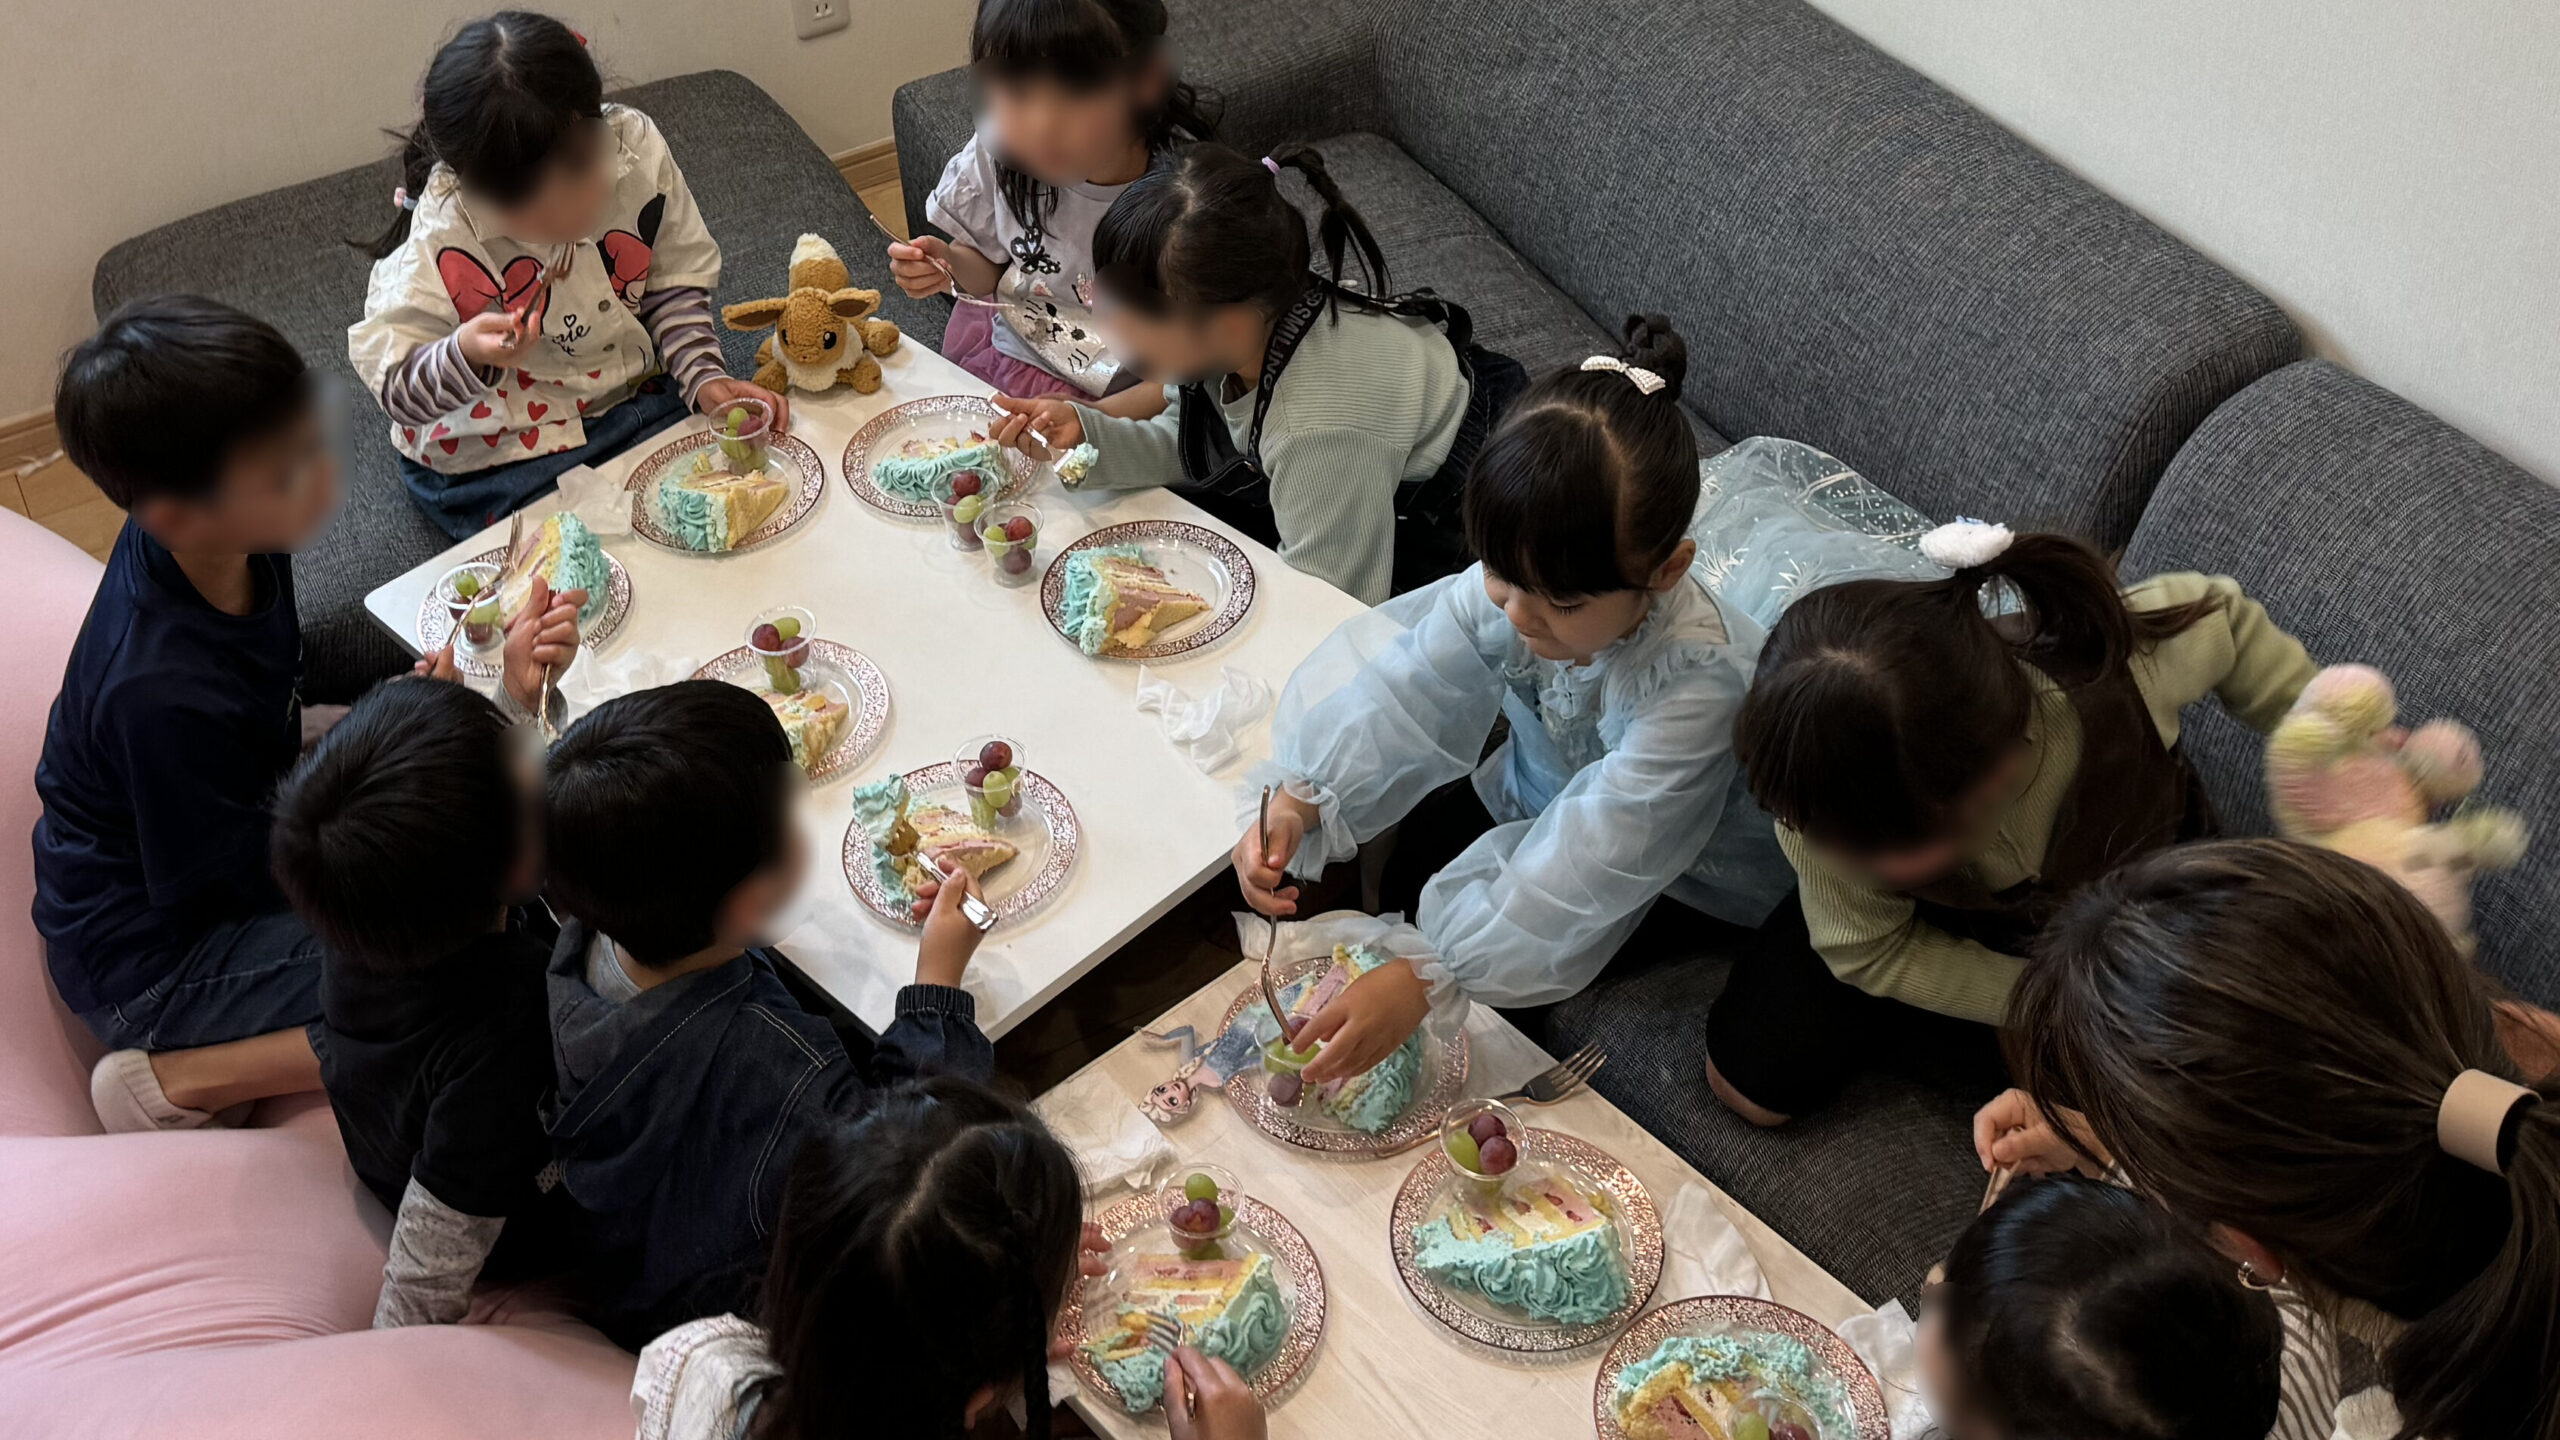 カットしたバースデーケーキを食べる子供達 5歳の娘のお誕生日会でマジックショー 藤沢市, 神奈川県